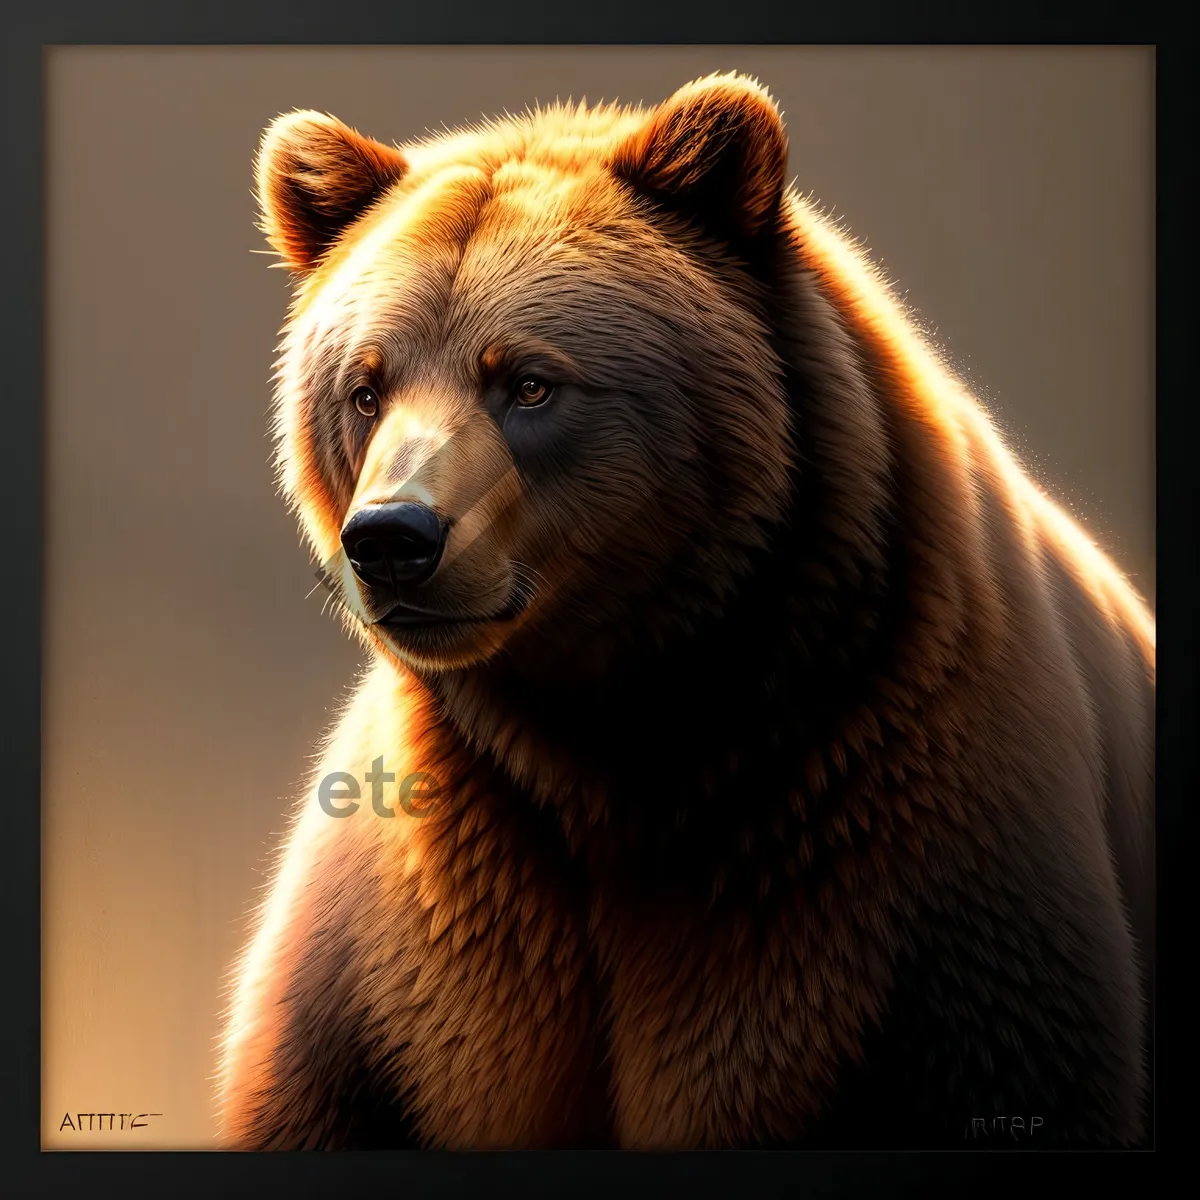 Picture of Fierce Fur Predator in Wildlife: Brown Bear